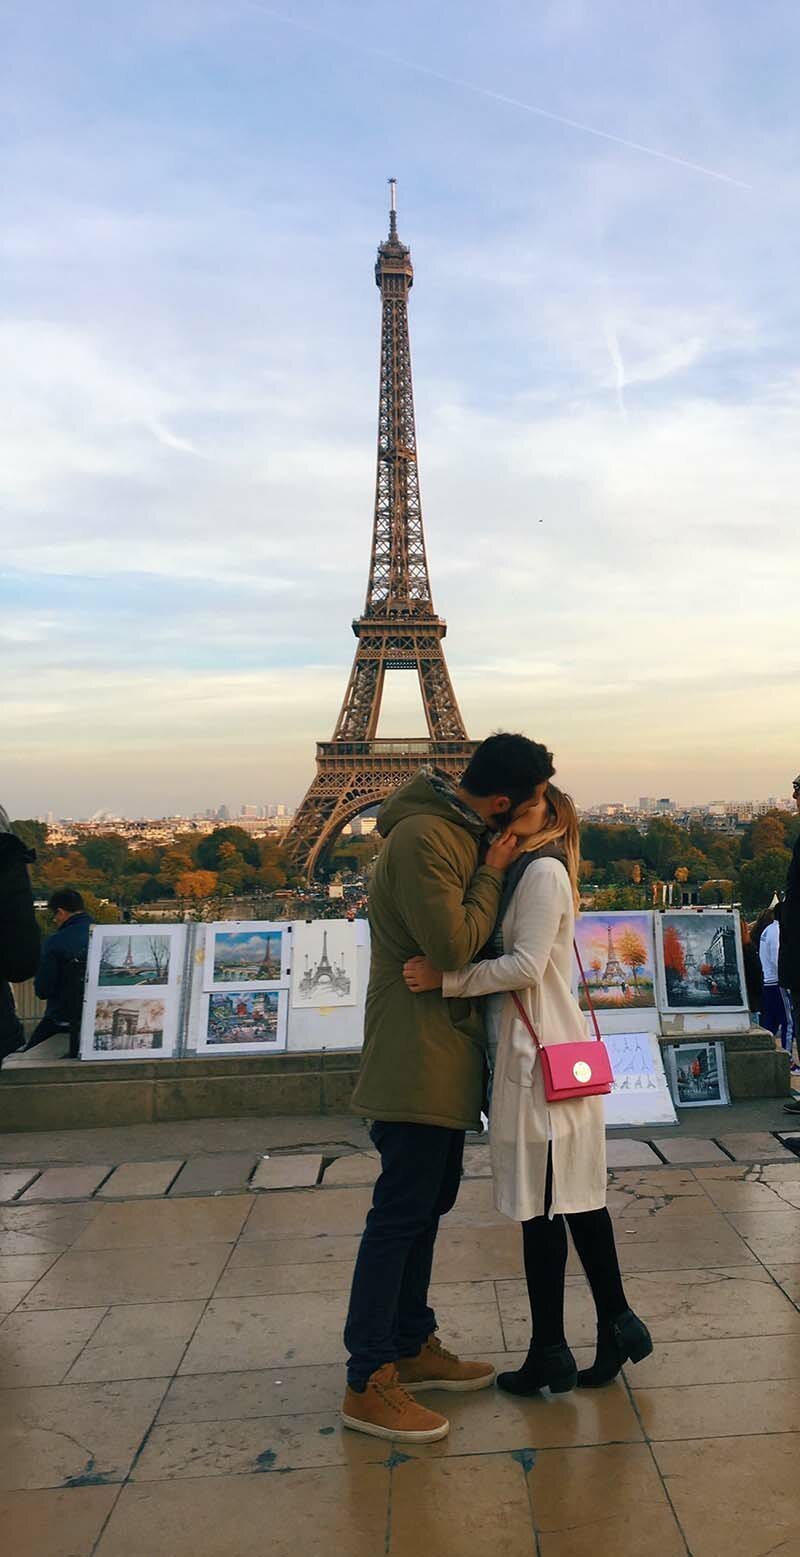 Девушка целует «случайных мужчин», чтобы сделать идеальные фотографии для социальных сетей путешествие,самостоятельные путешествия,турист,Фотография